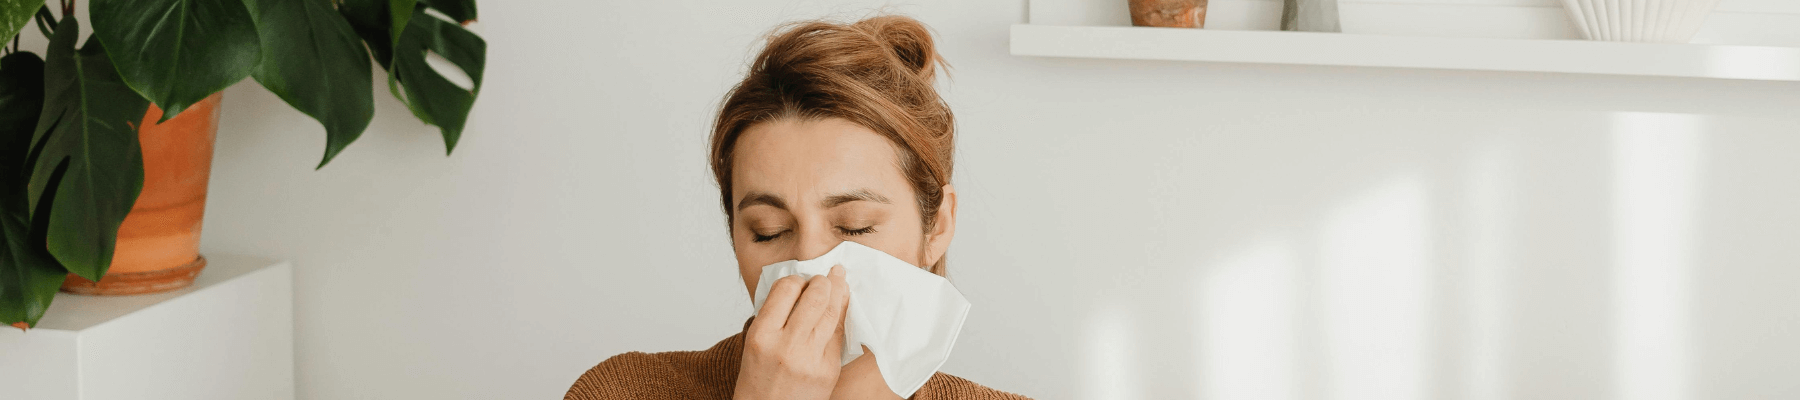 Allergian oireet